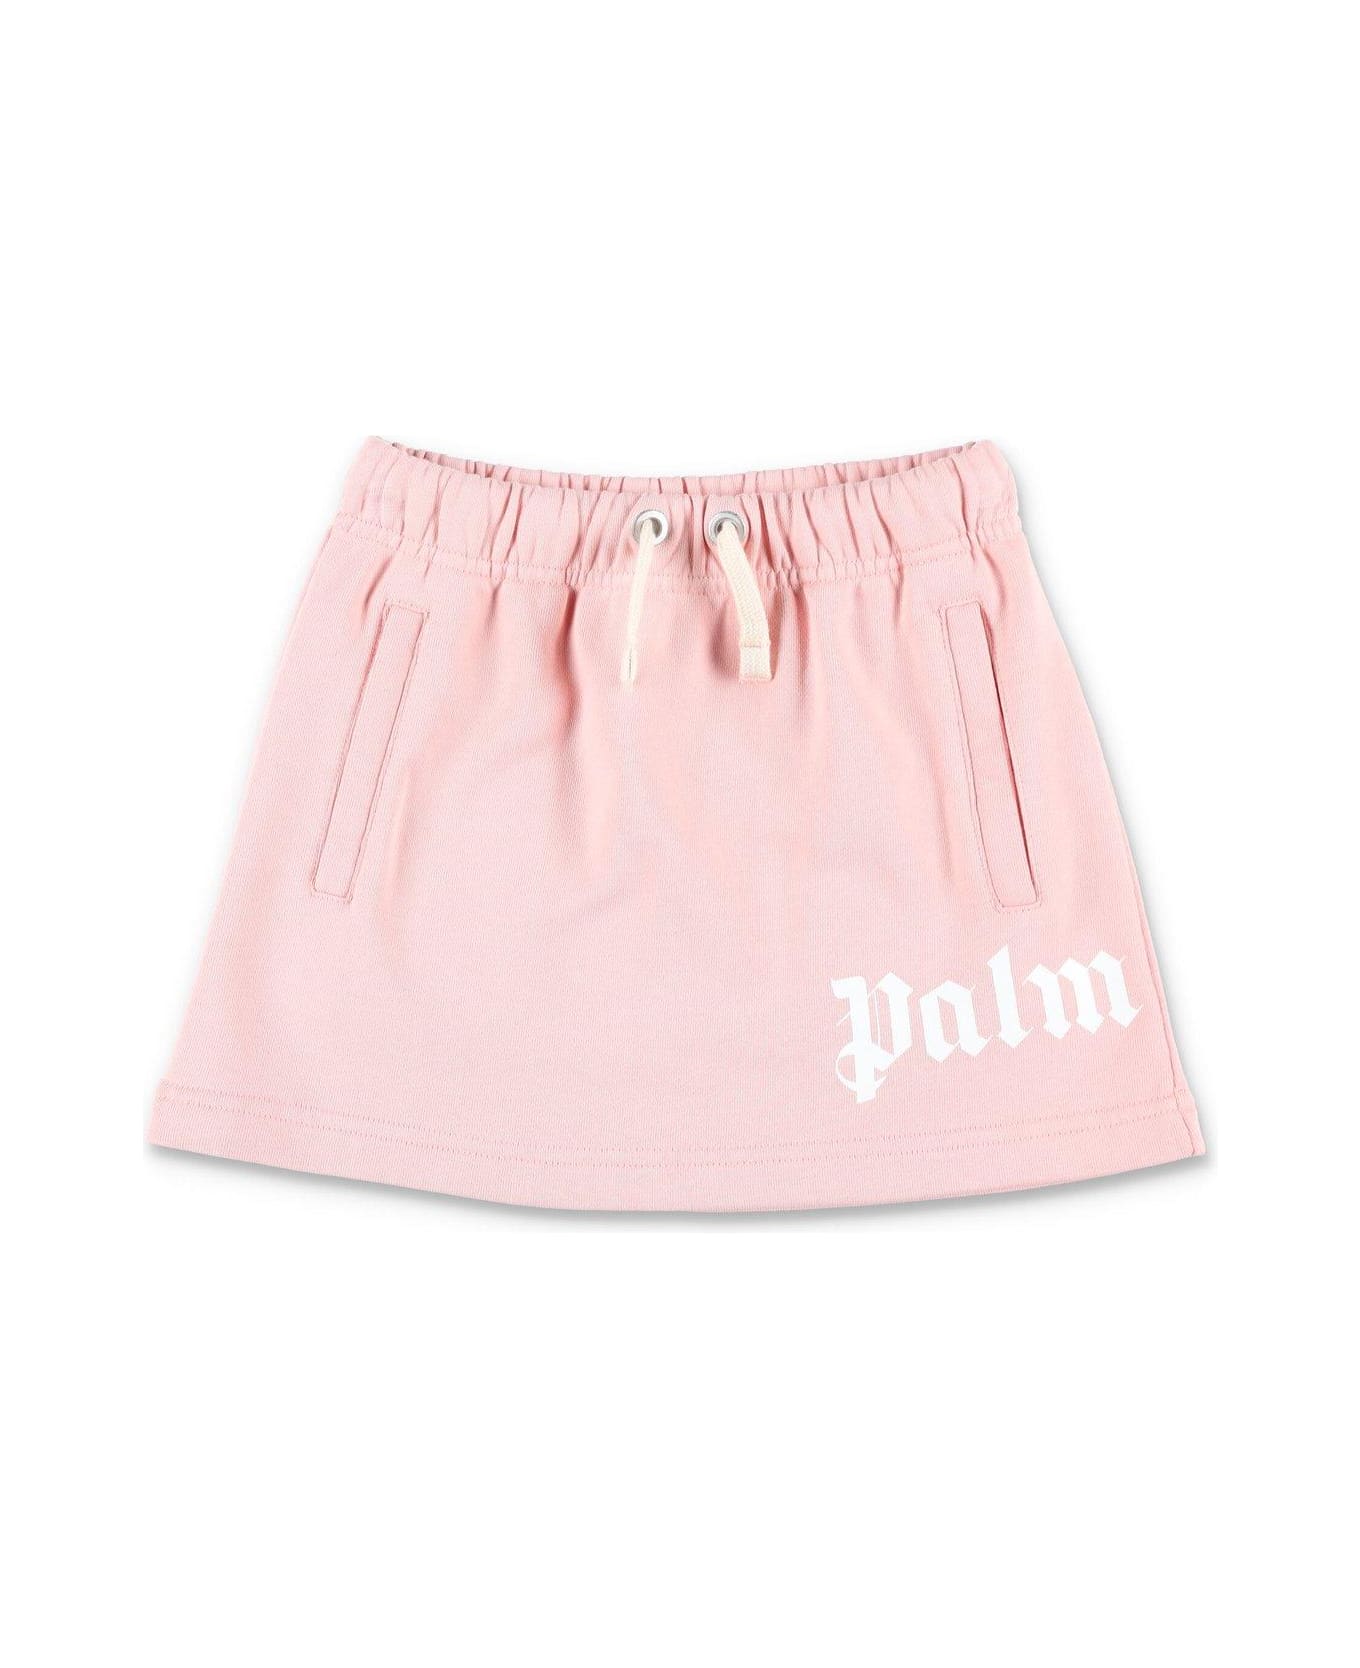 Palm Angels High Waist Drawstring Skirt - PINK